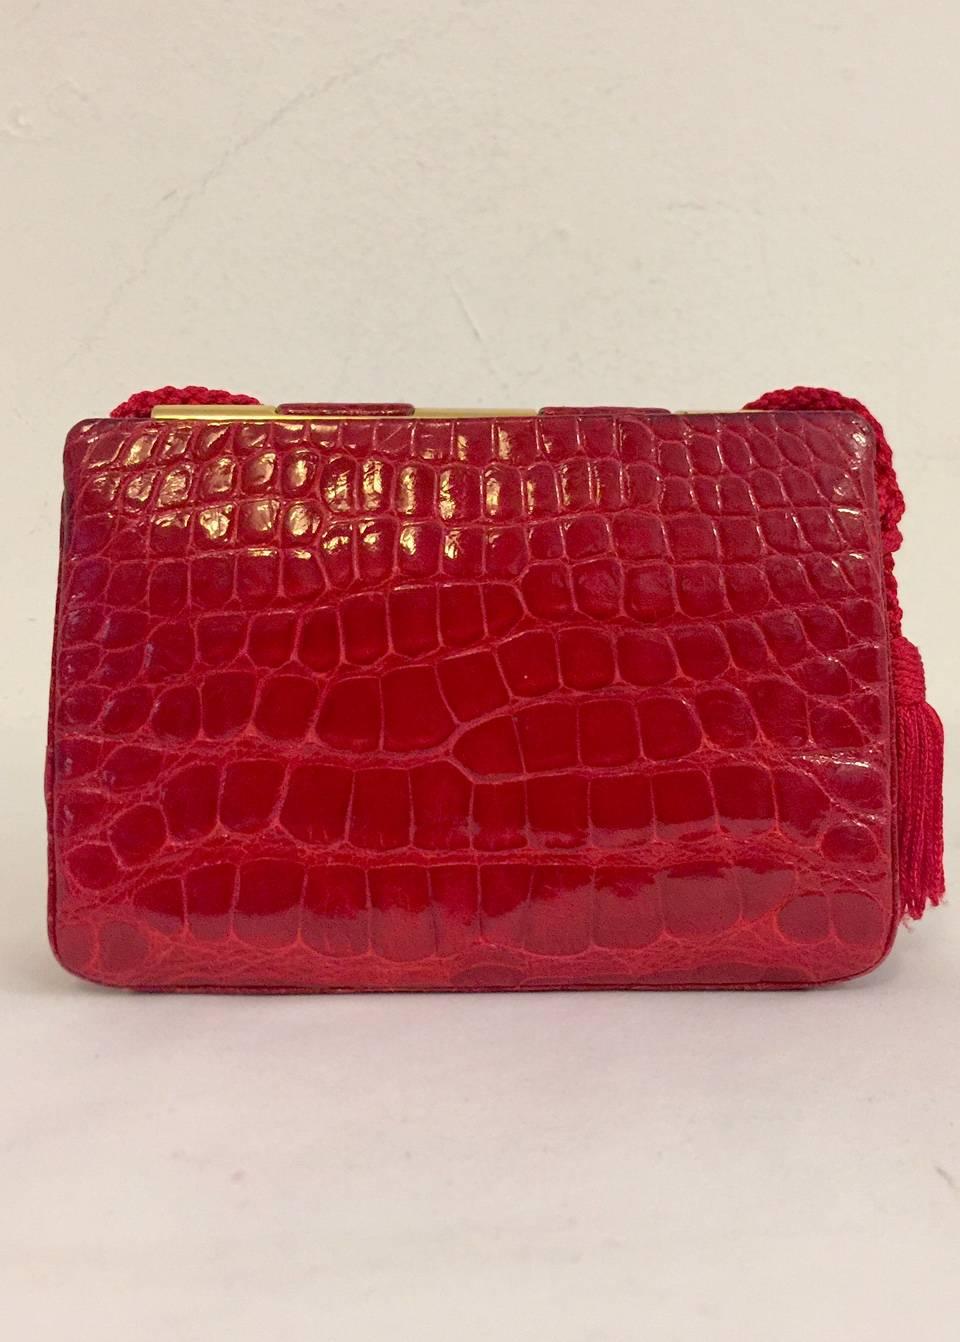 Vintage Judith Leiber Red Alligator Shoulder Bag With Gold Tone Hardware 1